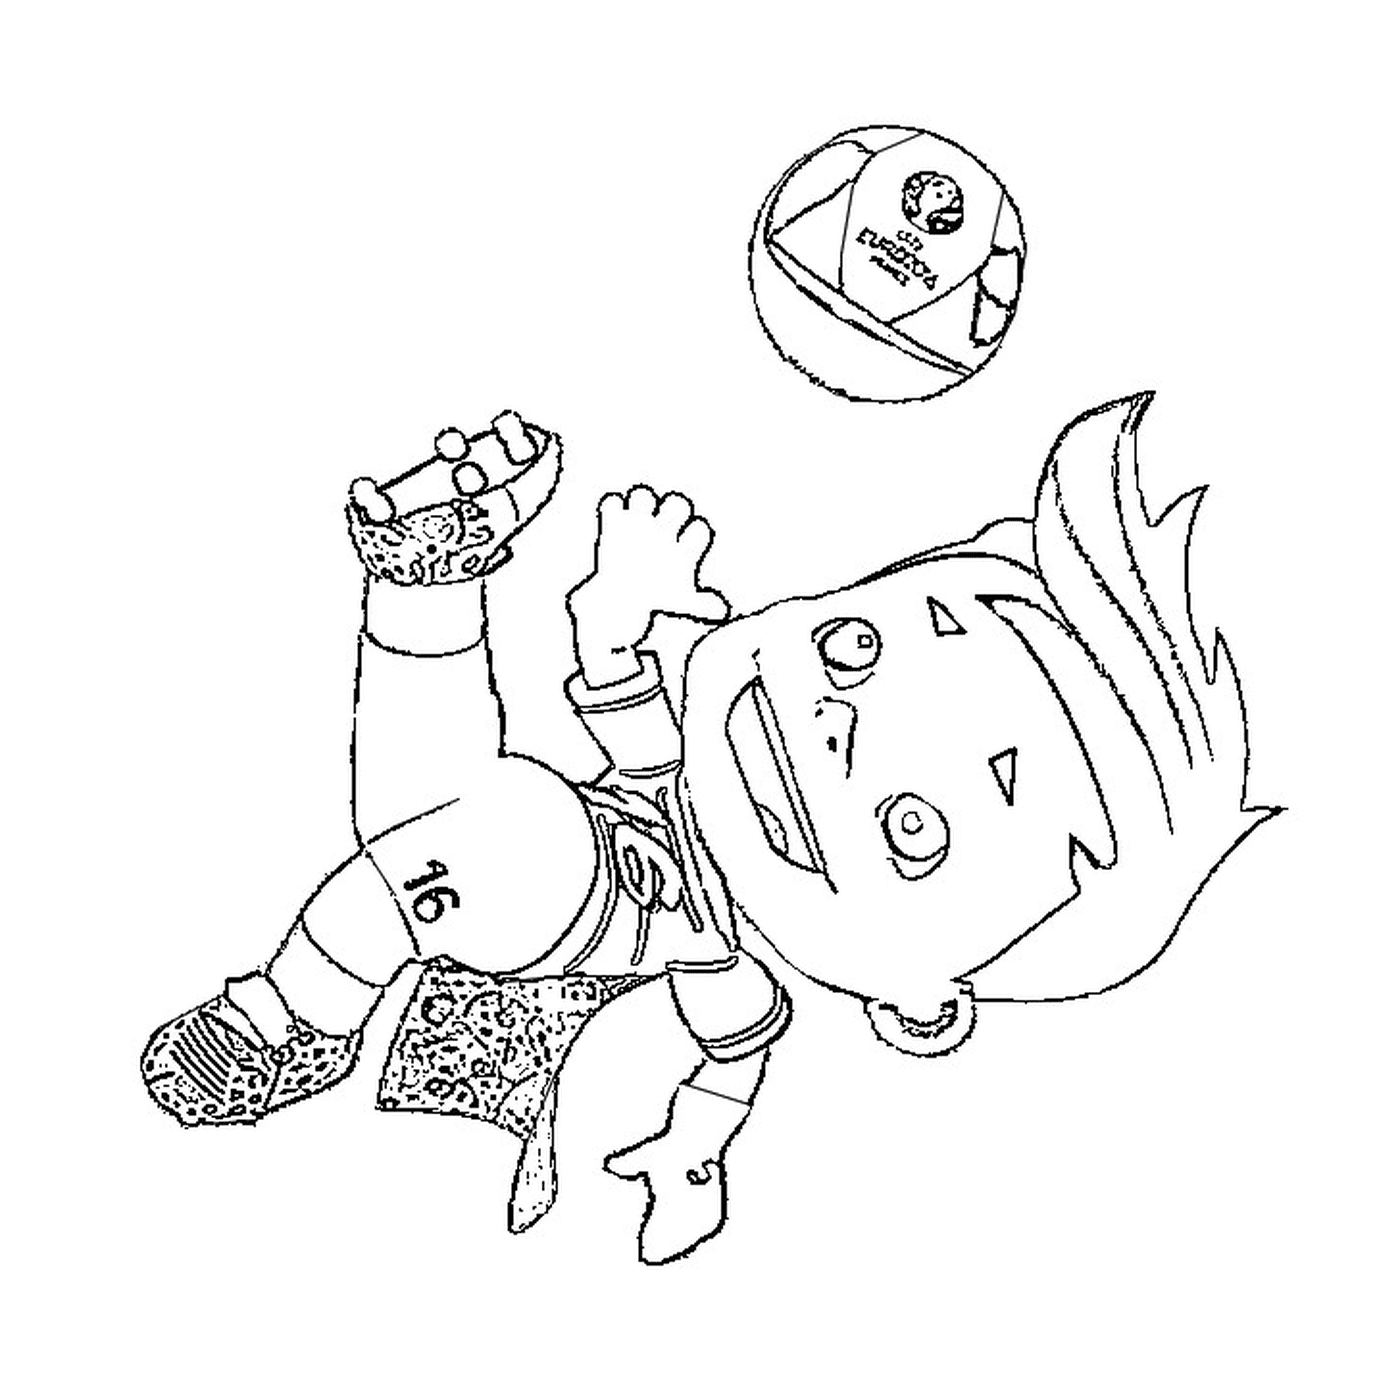  Ein Junge spielt mit einem Ball 